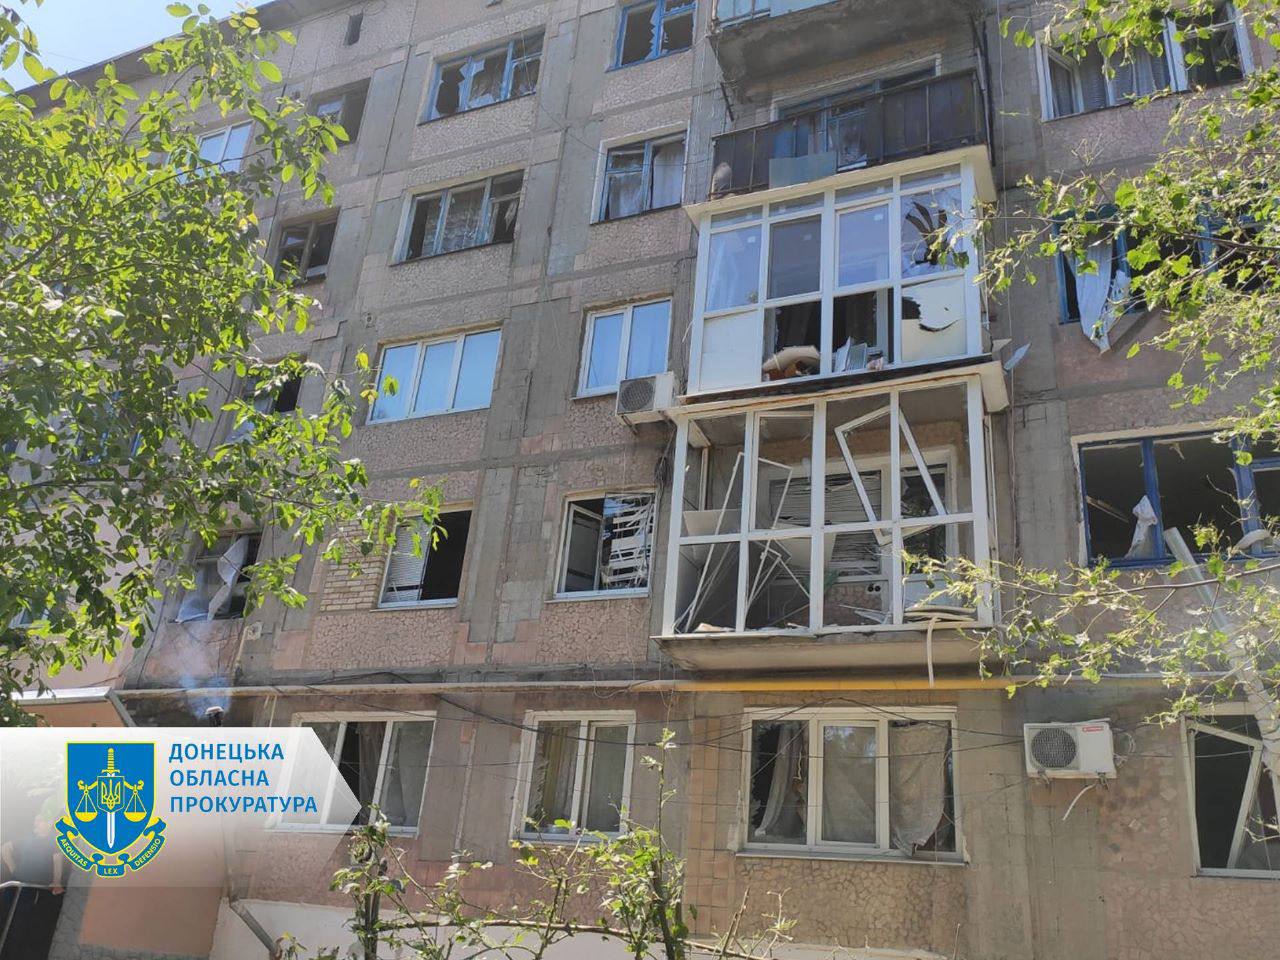 Четверо вбитих і восьмеро поранених, серед них двоє дітей на Донеччині – за фактами чергових злочинів окупаційних військ розпочато досудові розслідування